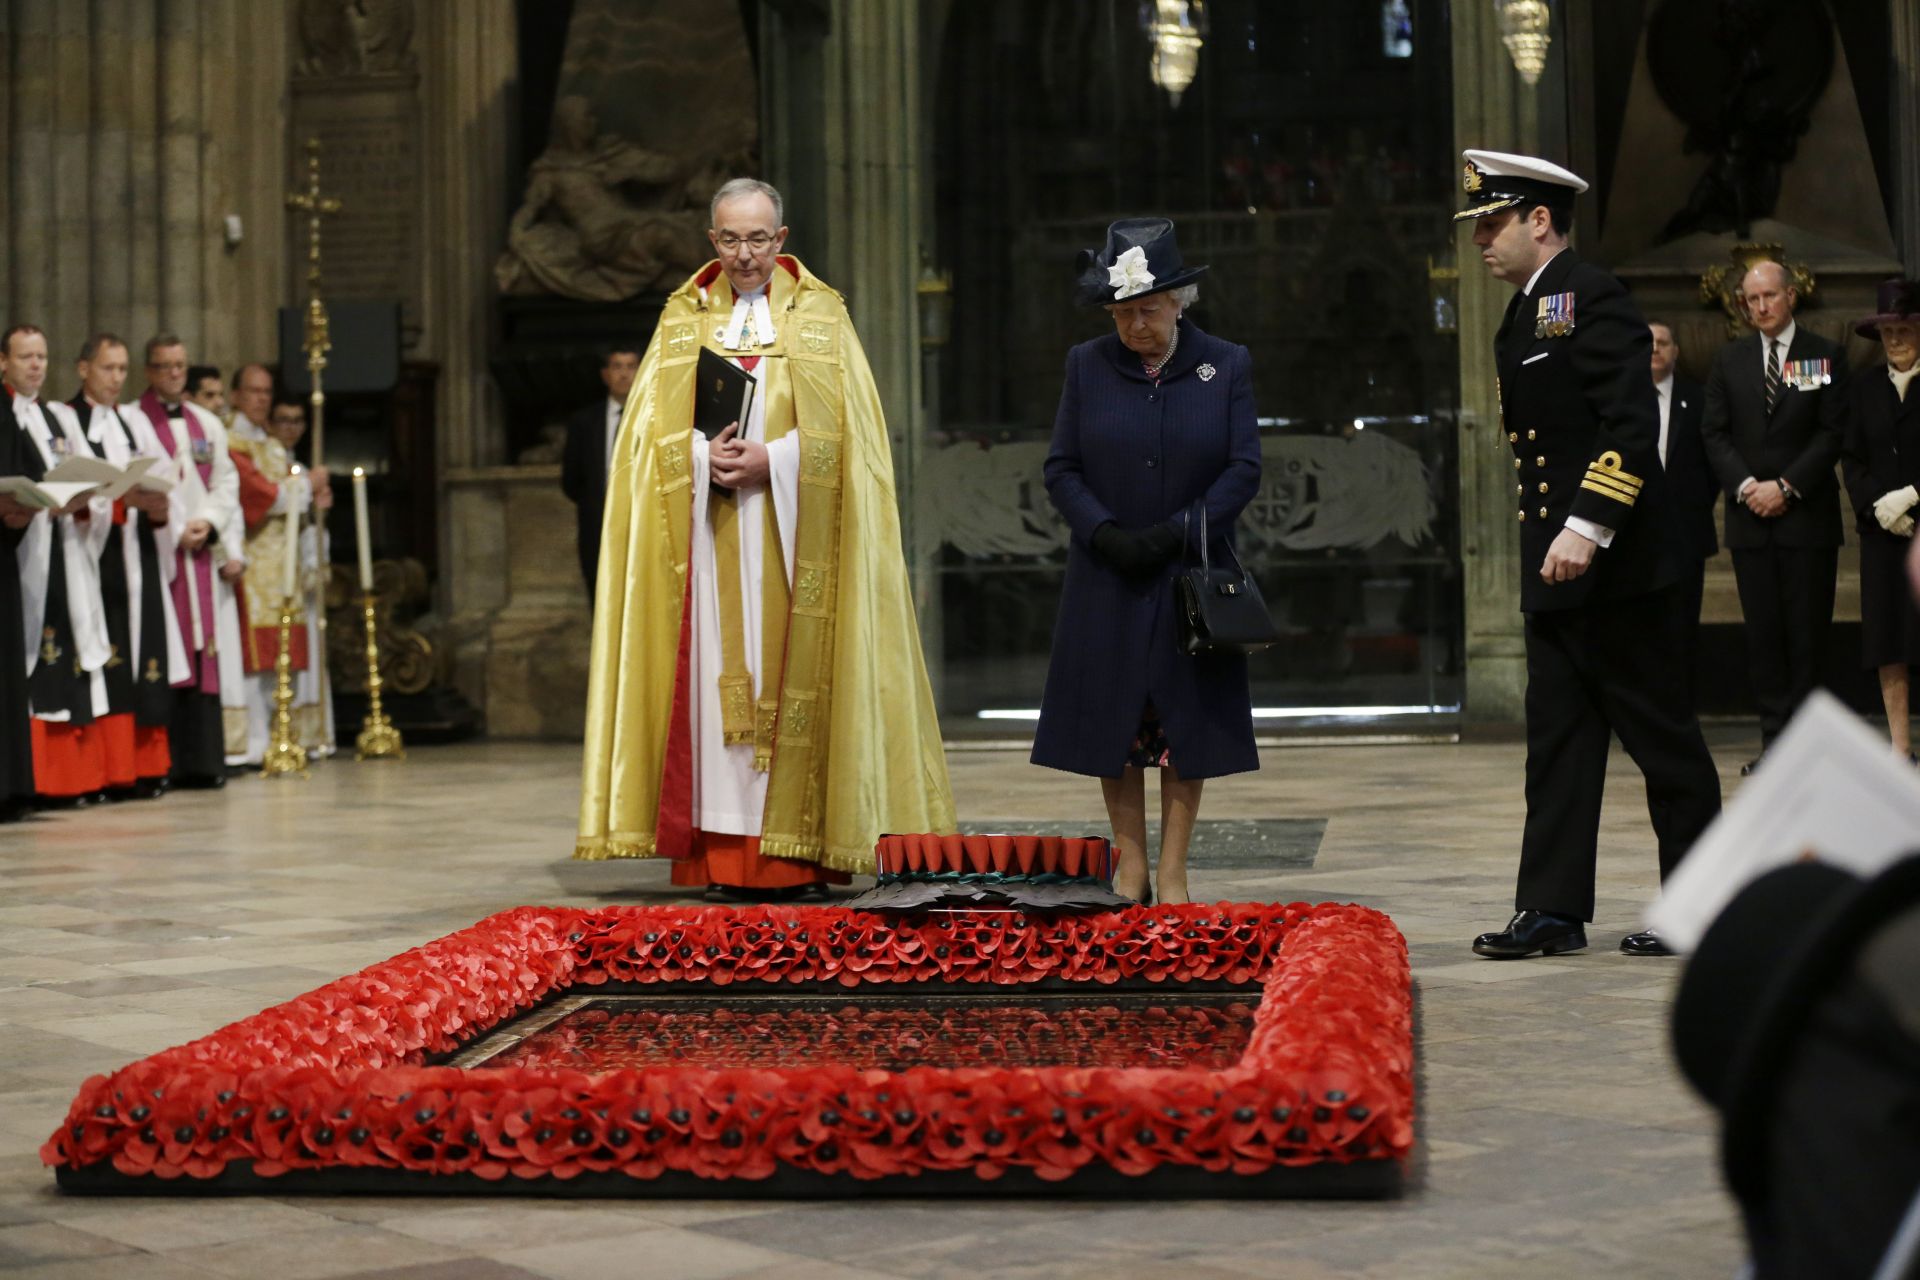 2015 г. - кралица Елизабет на паметника на Незнайния воин в Лондон, където от нейно има е поднесен огромен венец